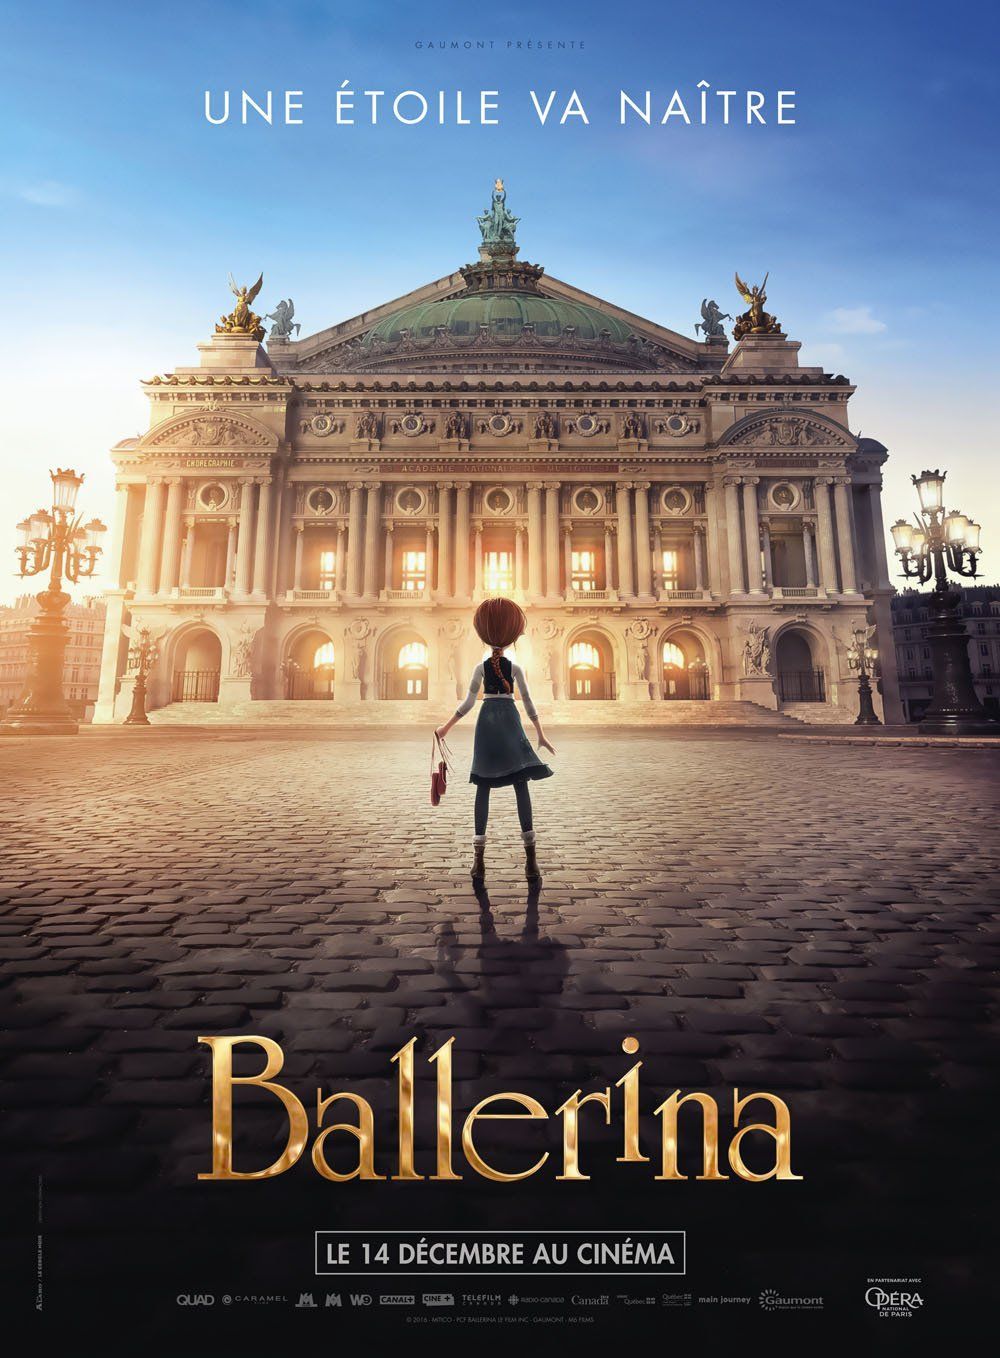 Ballerina : un film d'animation à savourer pour Noël #2